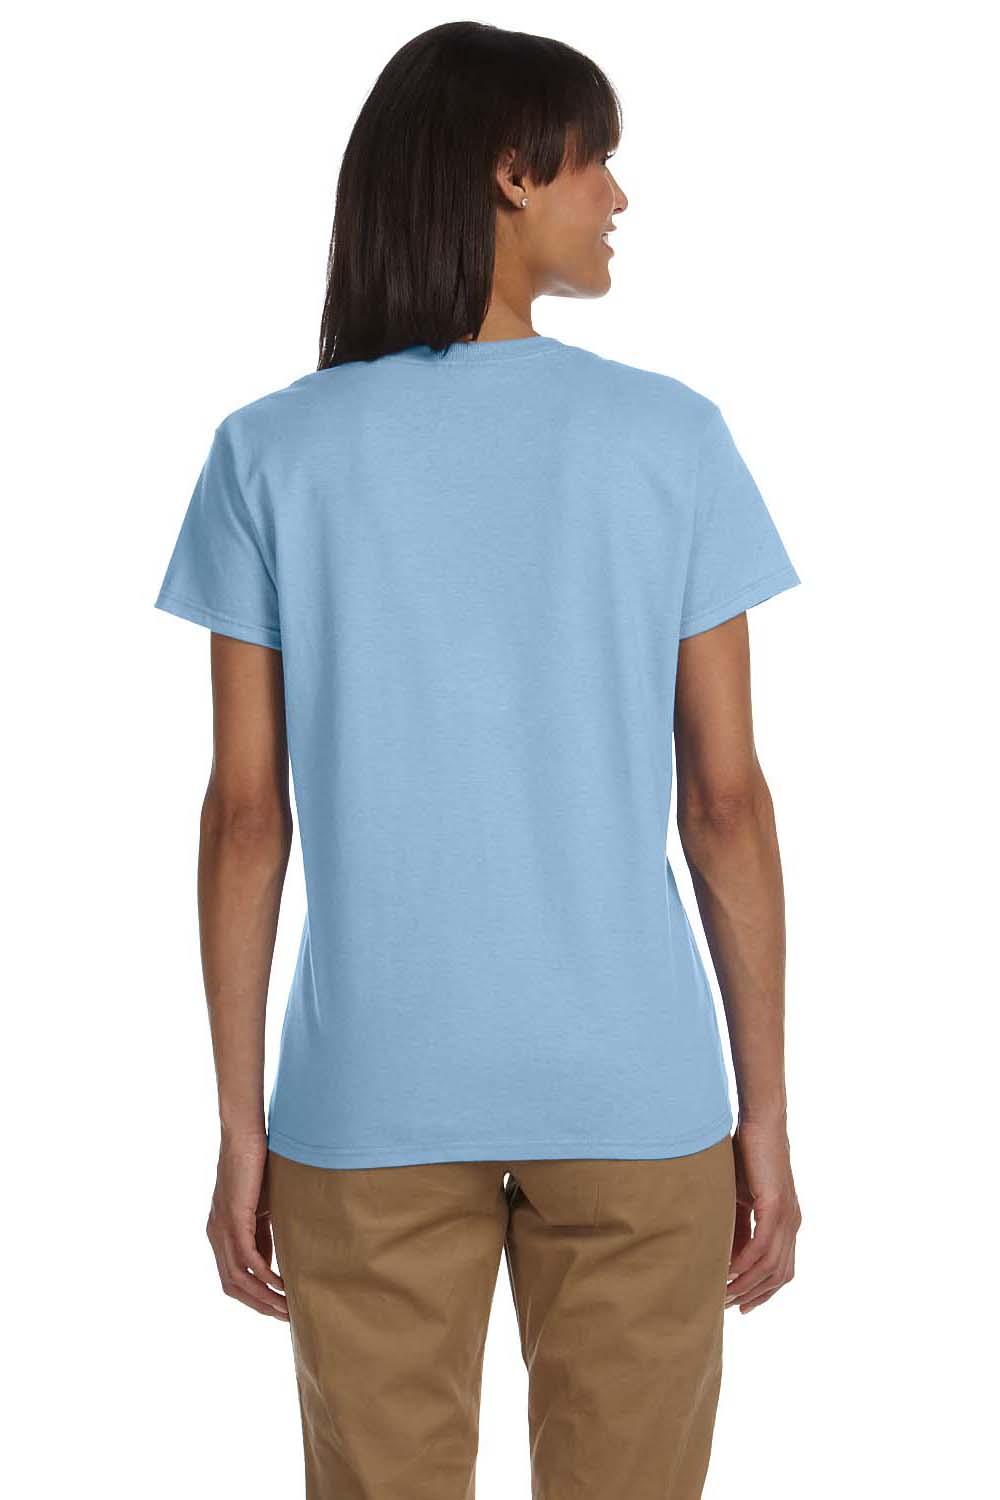 Gildan G200L Womens Ultra Short Sleeve Crewneck T-Shirt Light Blue Back